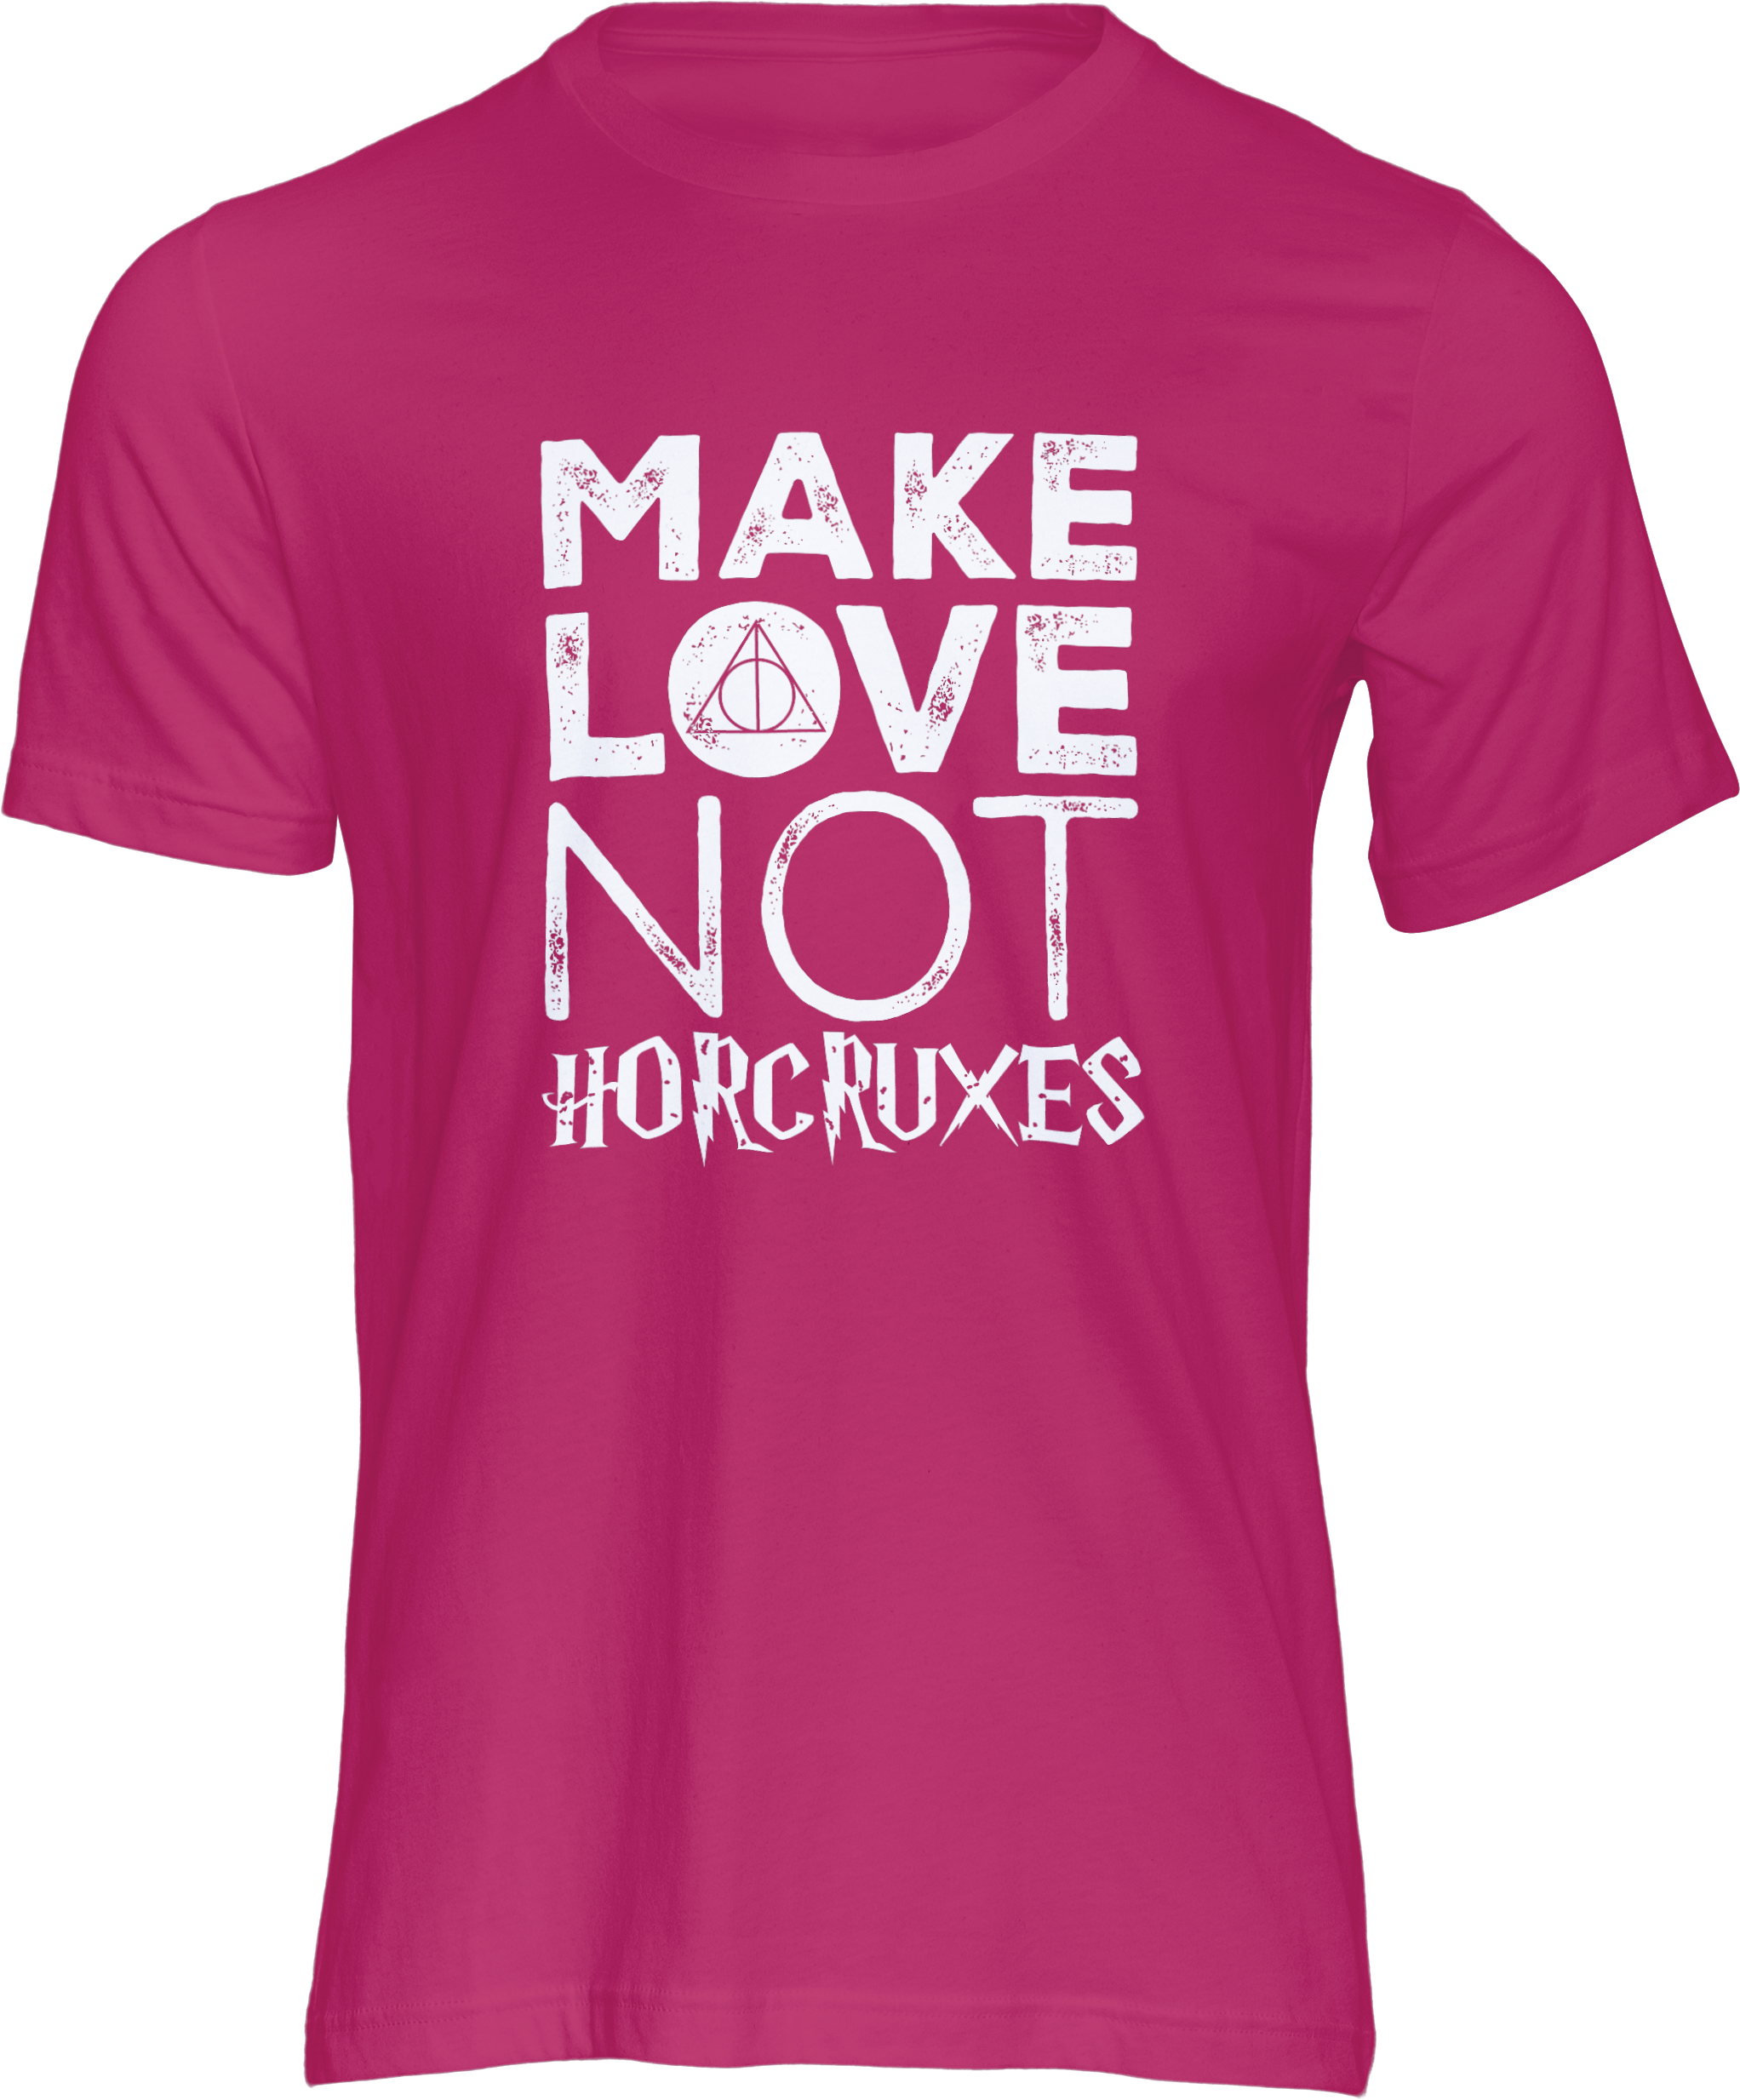 Motiv-Shirt – Make Love Not Horcruxes – T-Shirt (pink)